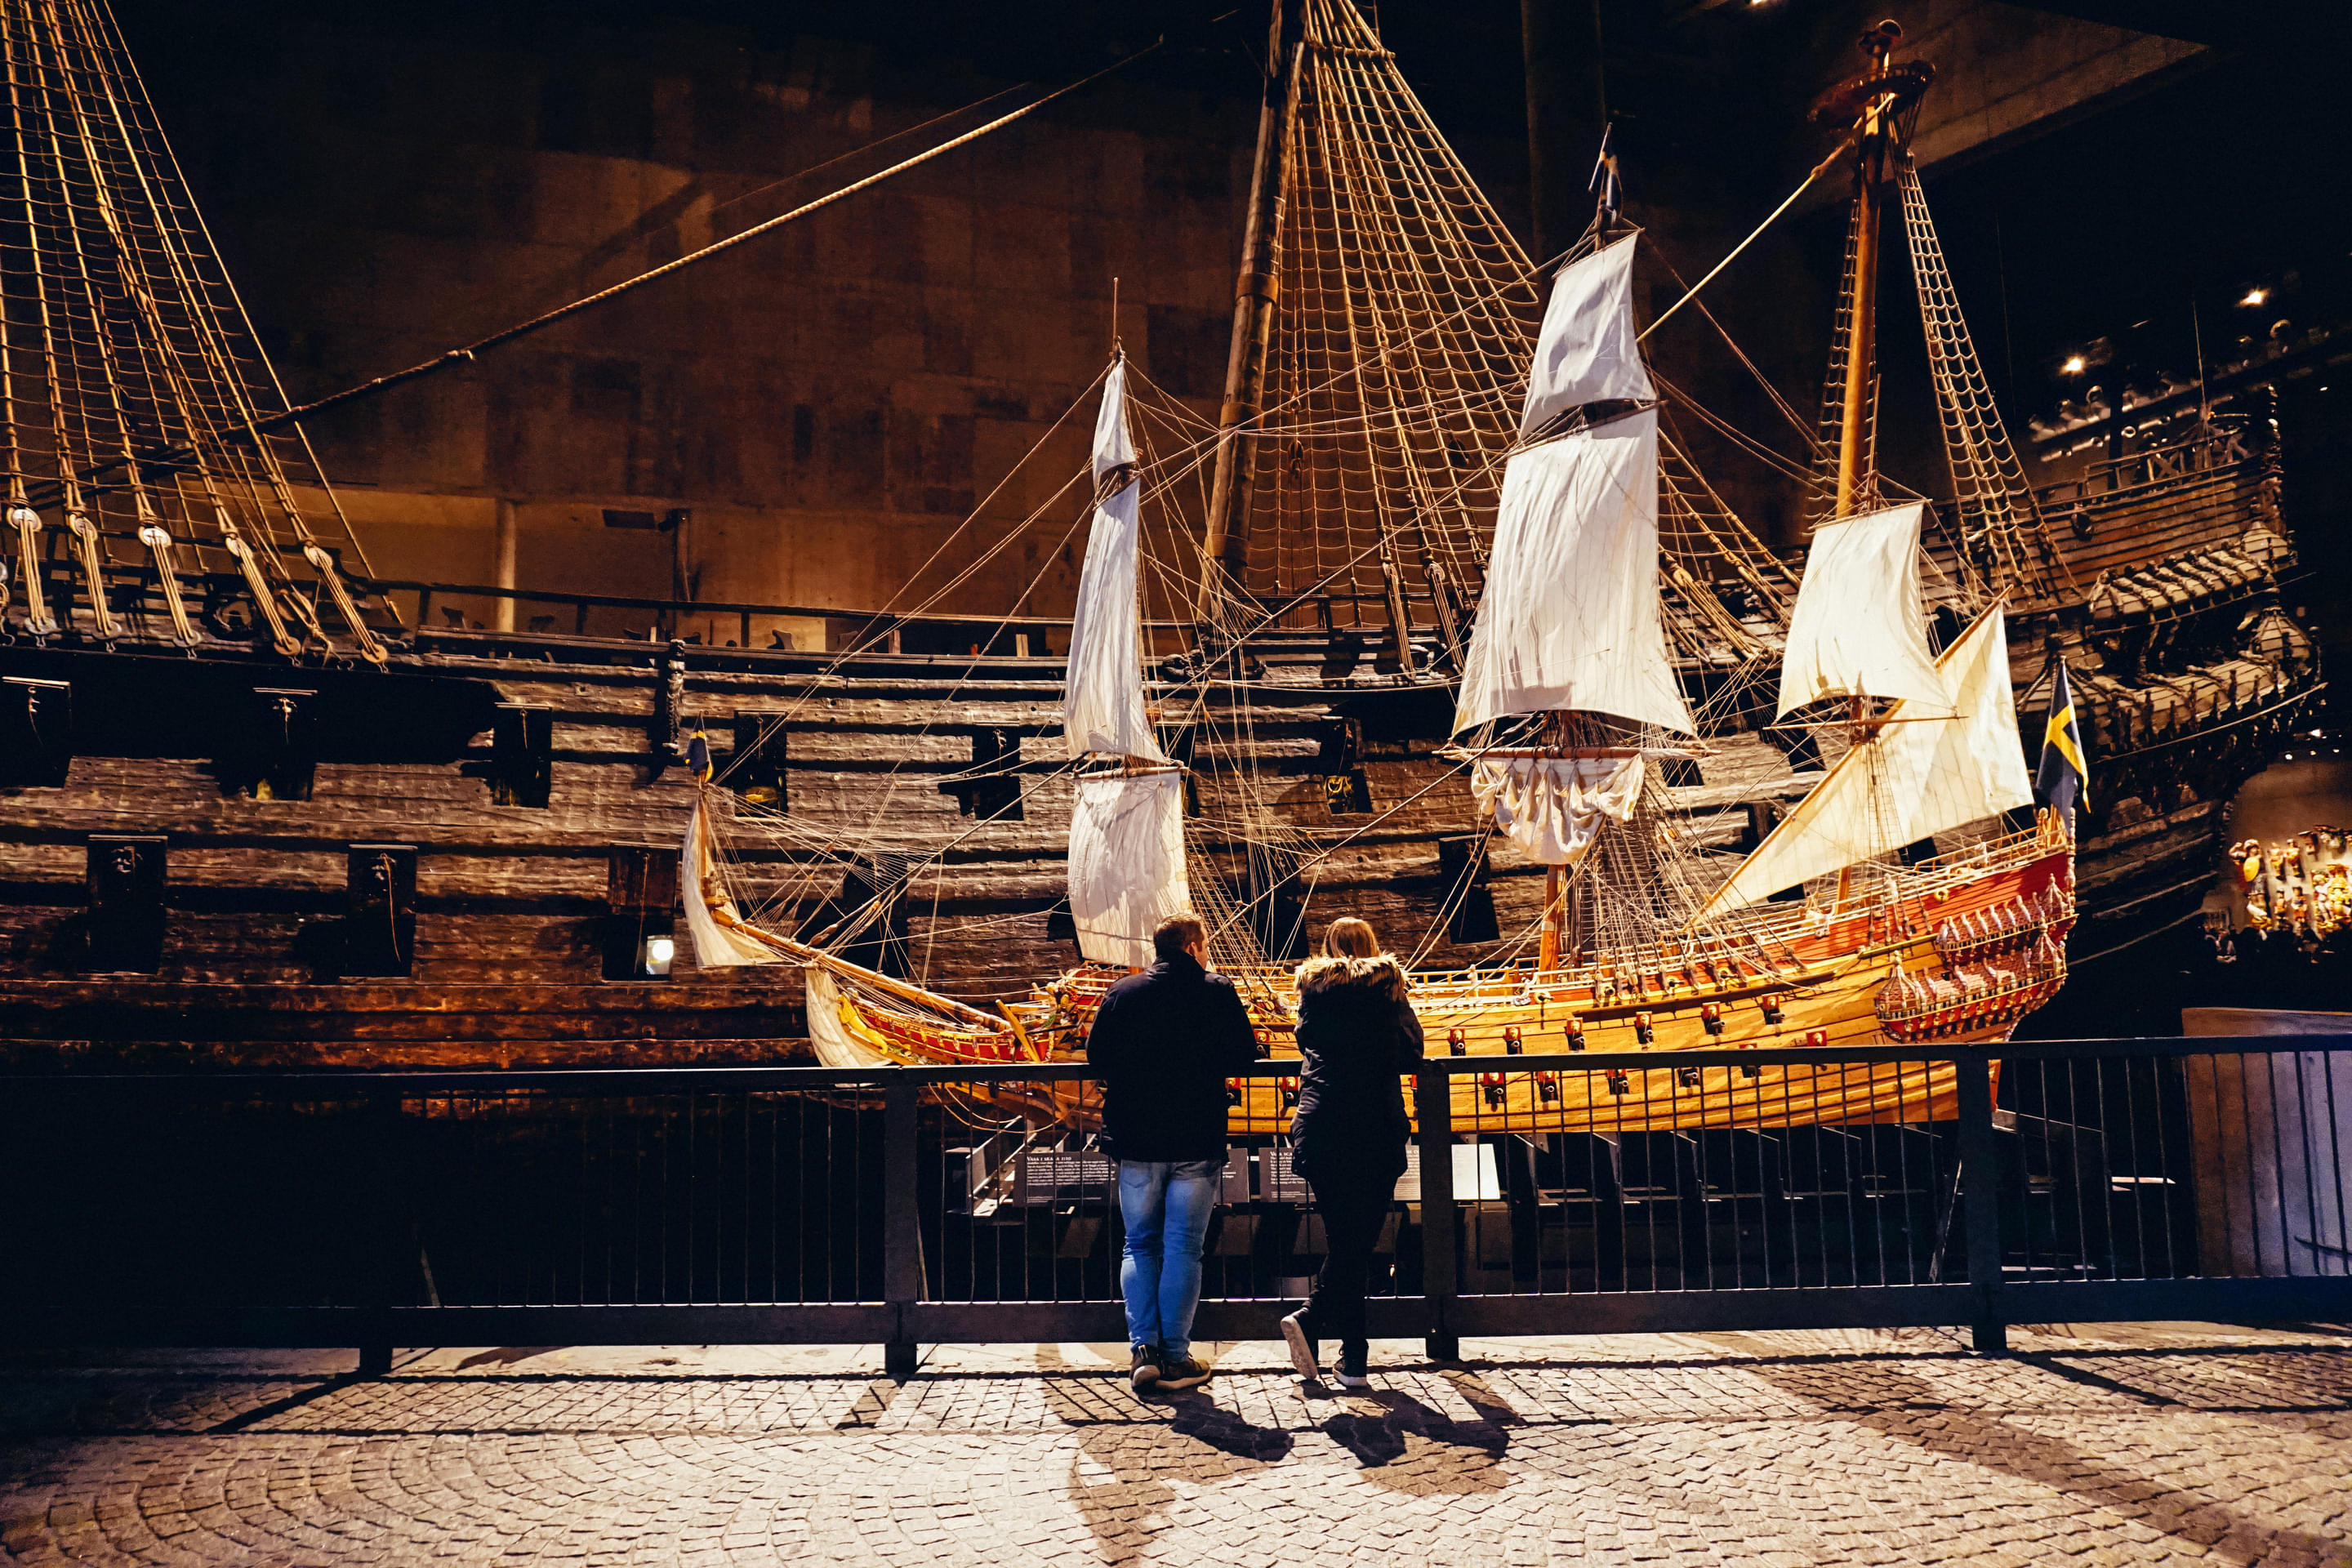 Vasa Museum Overview